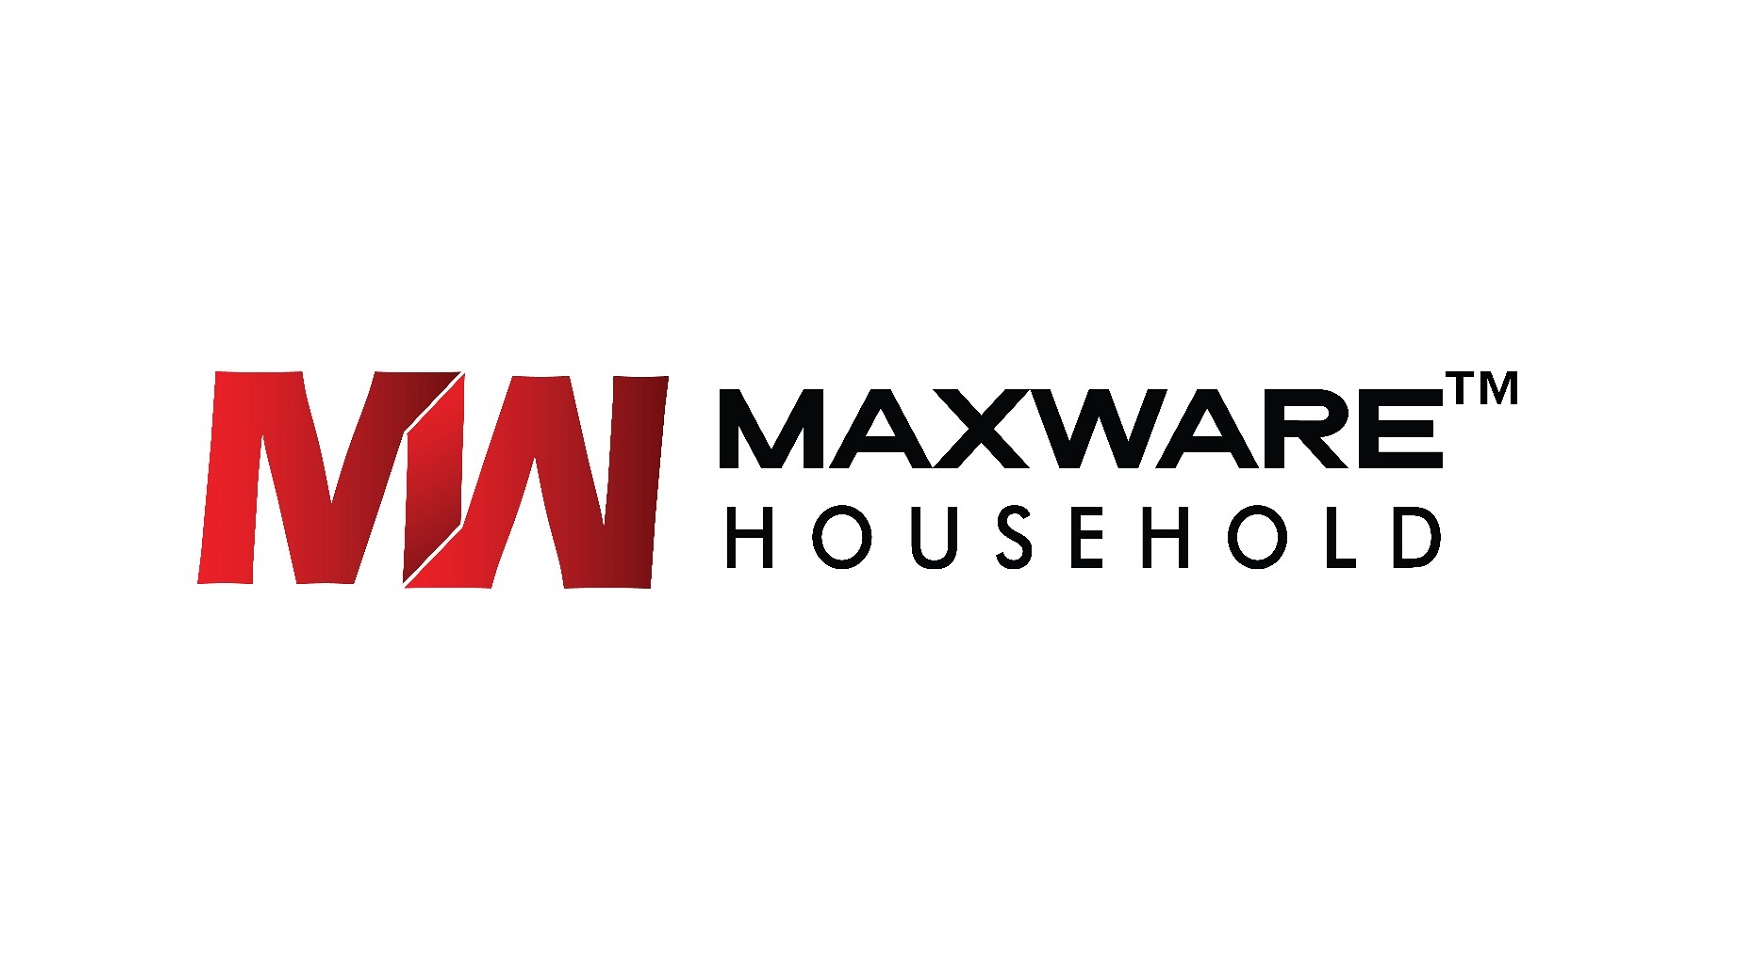 Maxware Household